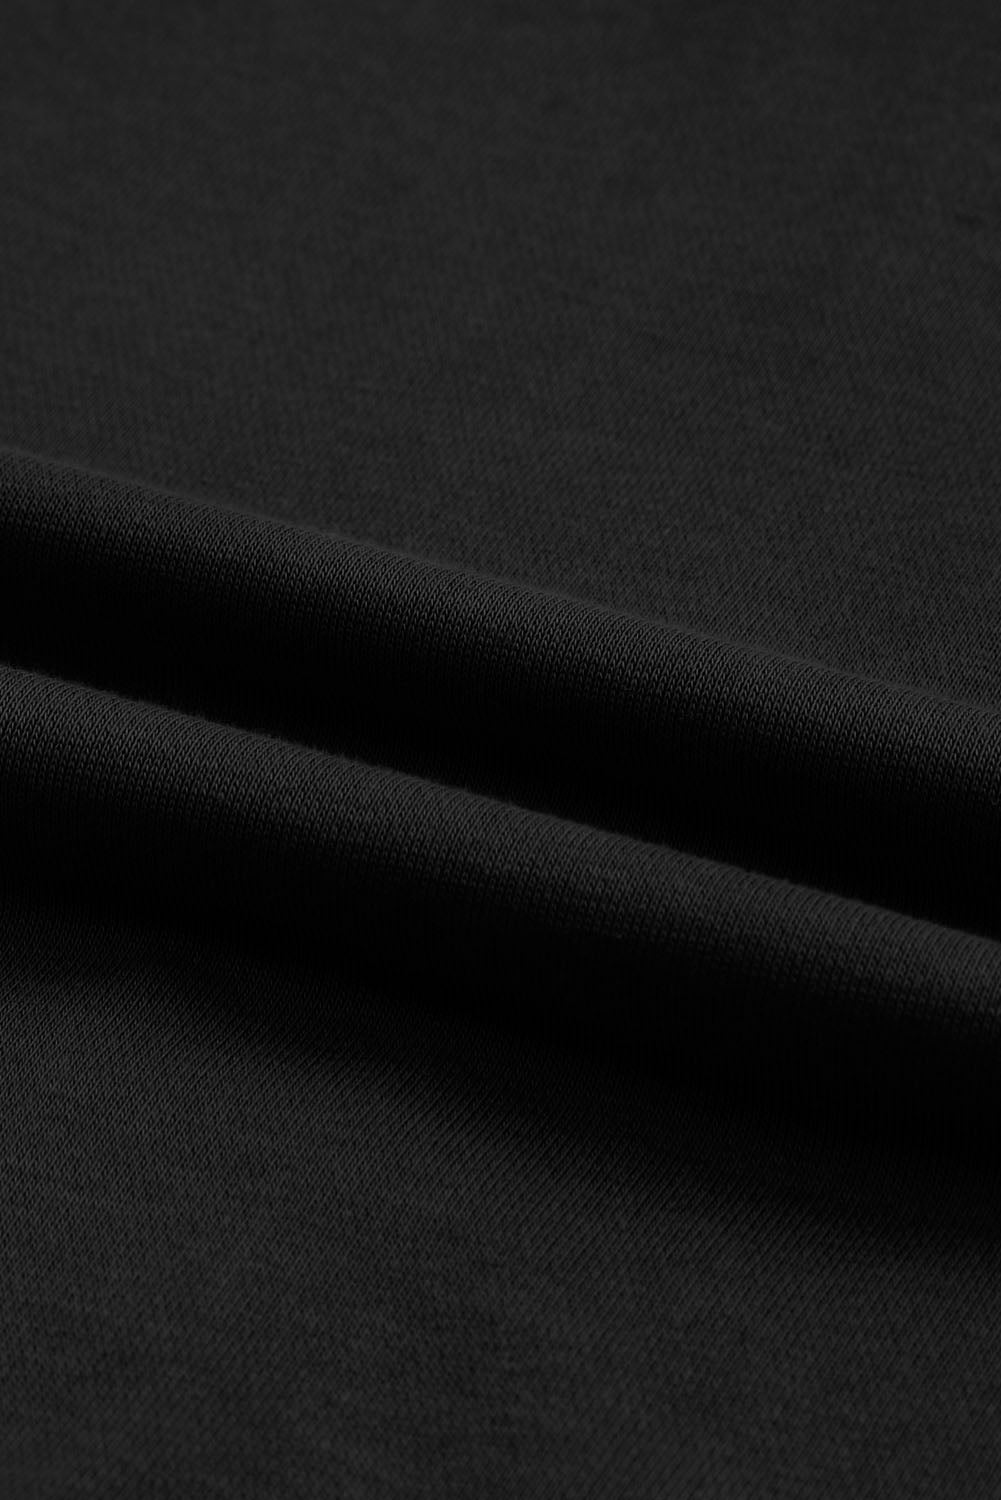 Crna majica s kapuljačom i otvorenim šavovima s neobrađenim rubovima